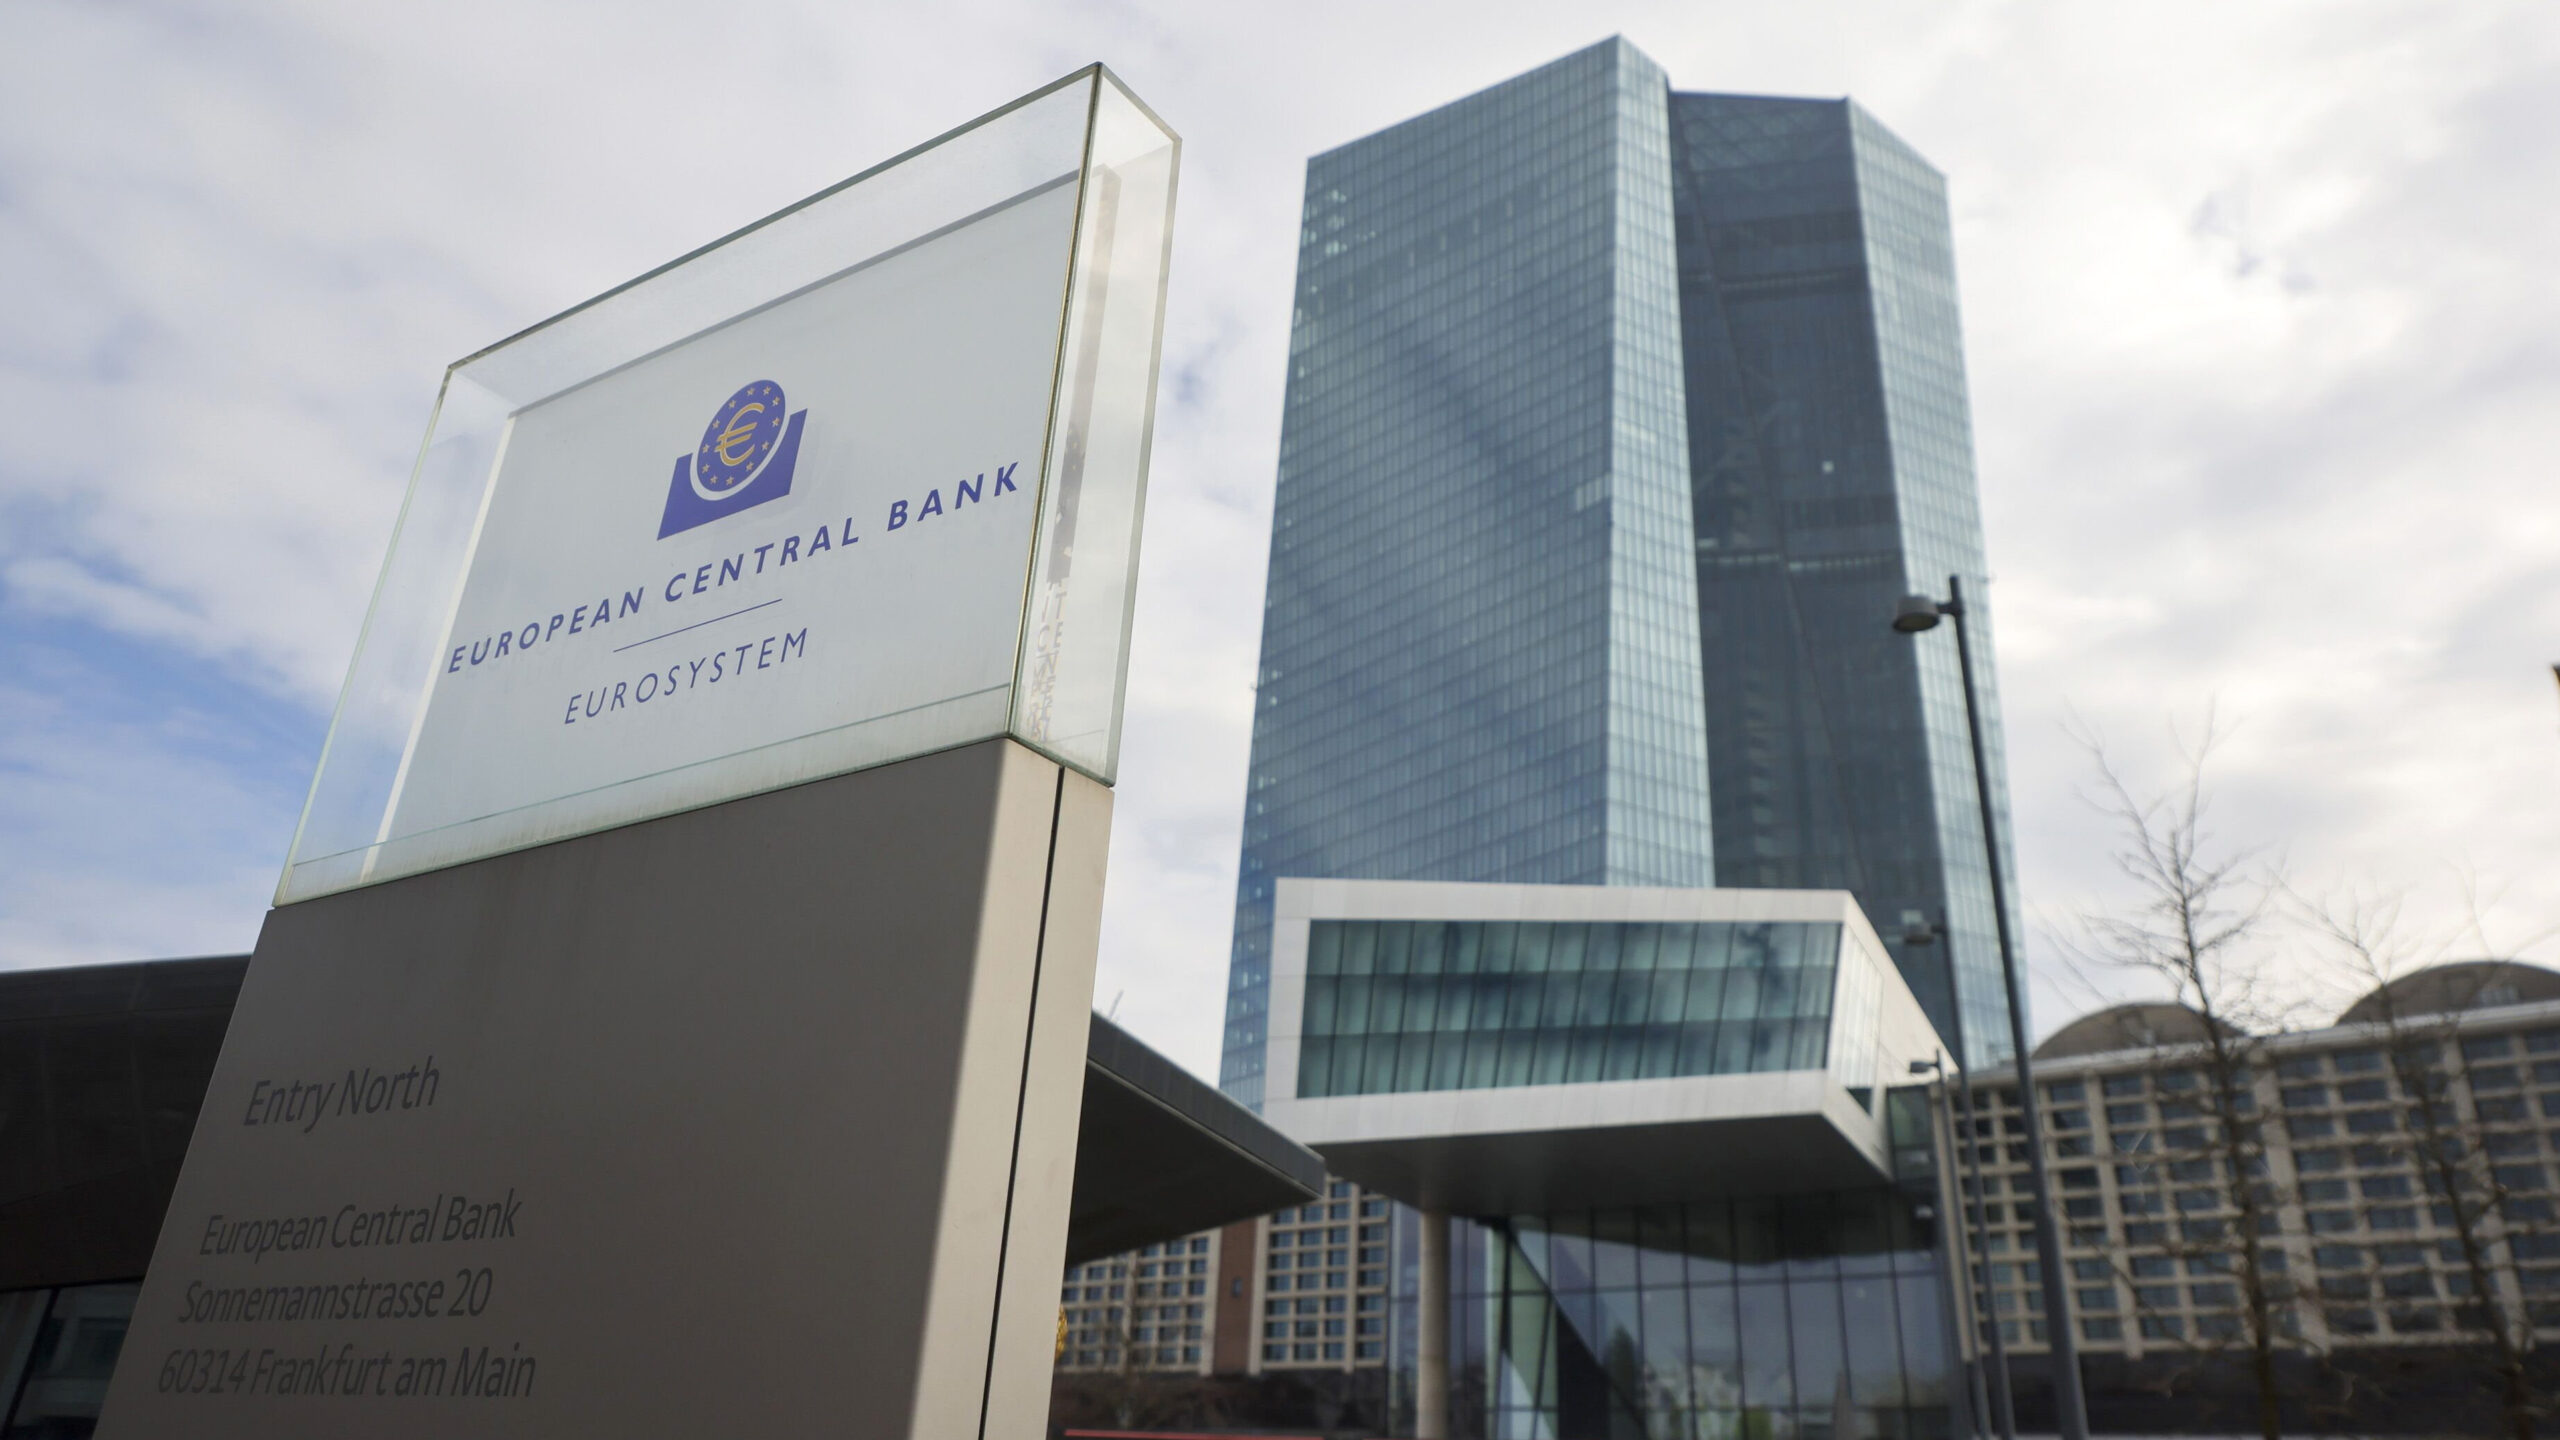 European Central Bank logo and entrance